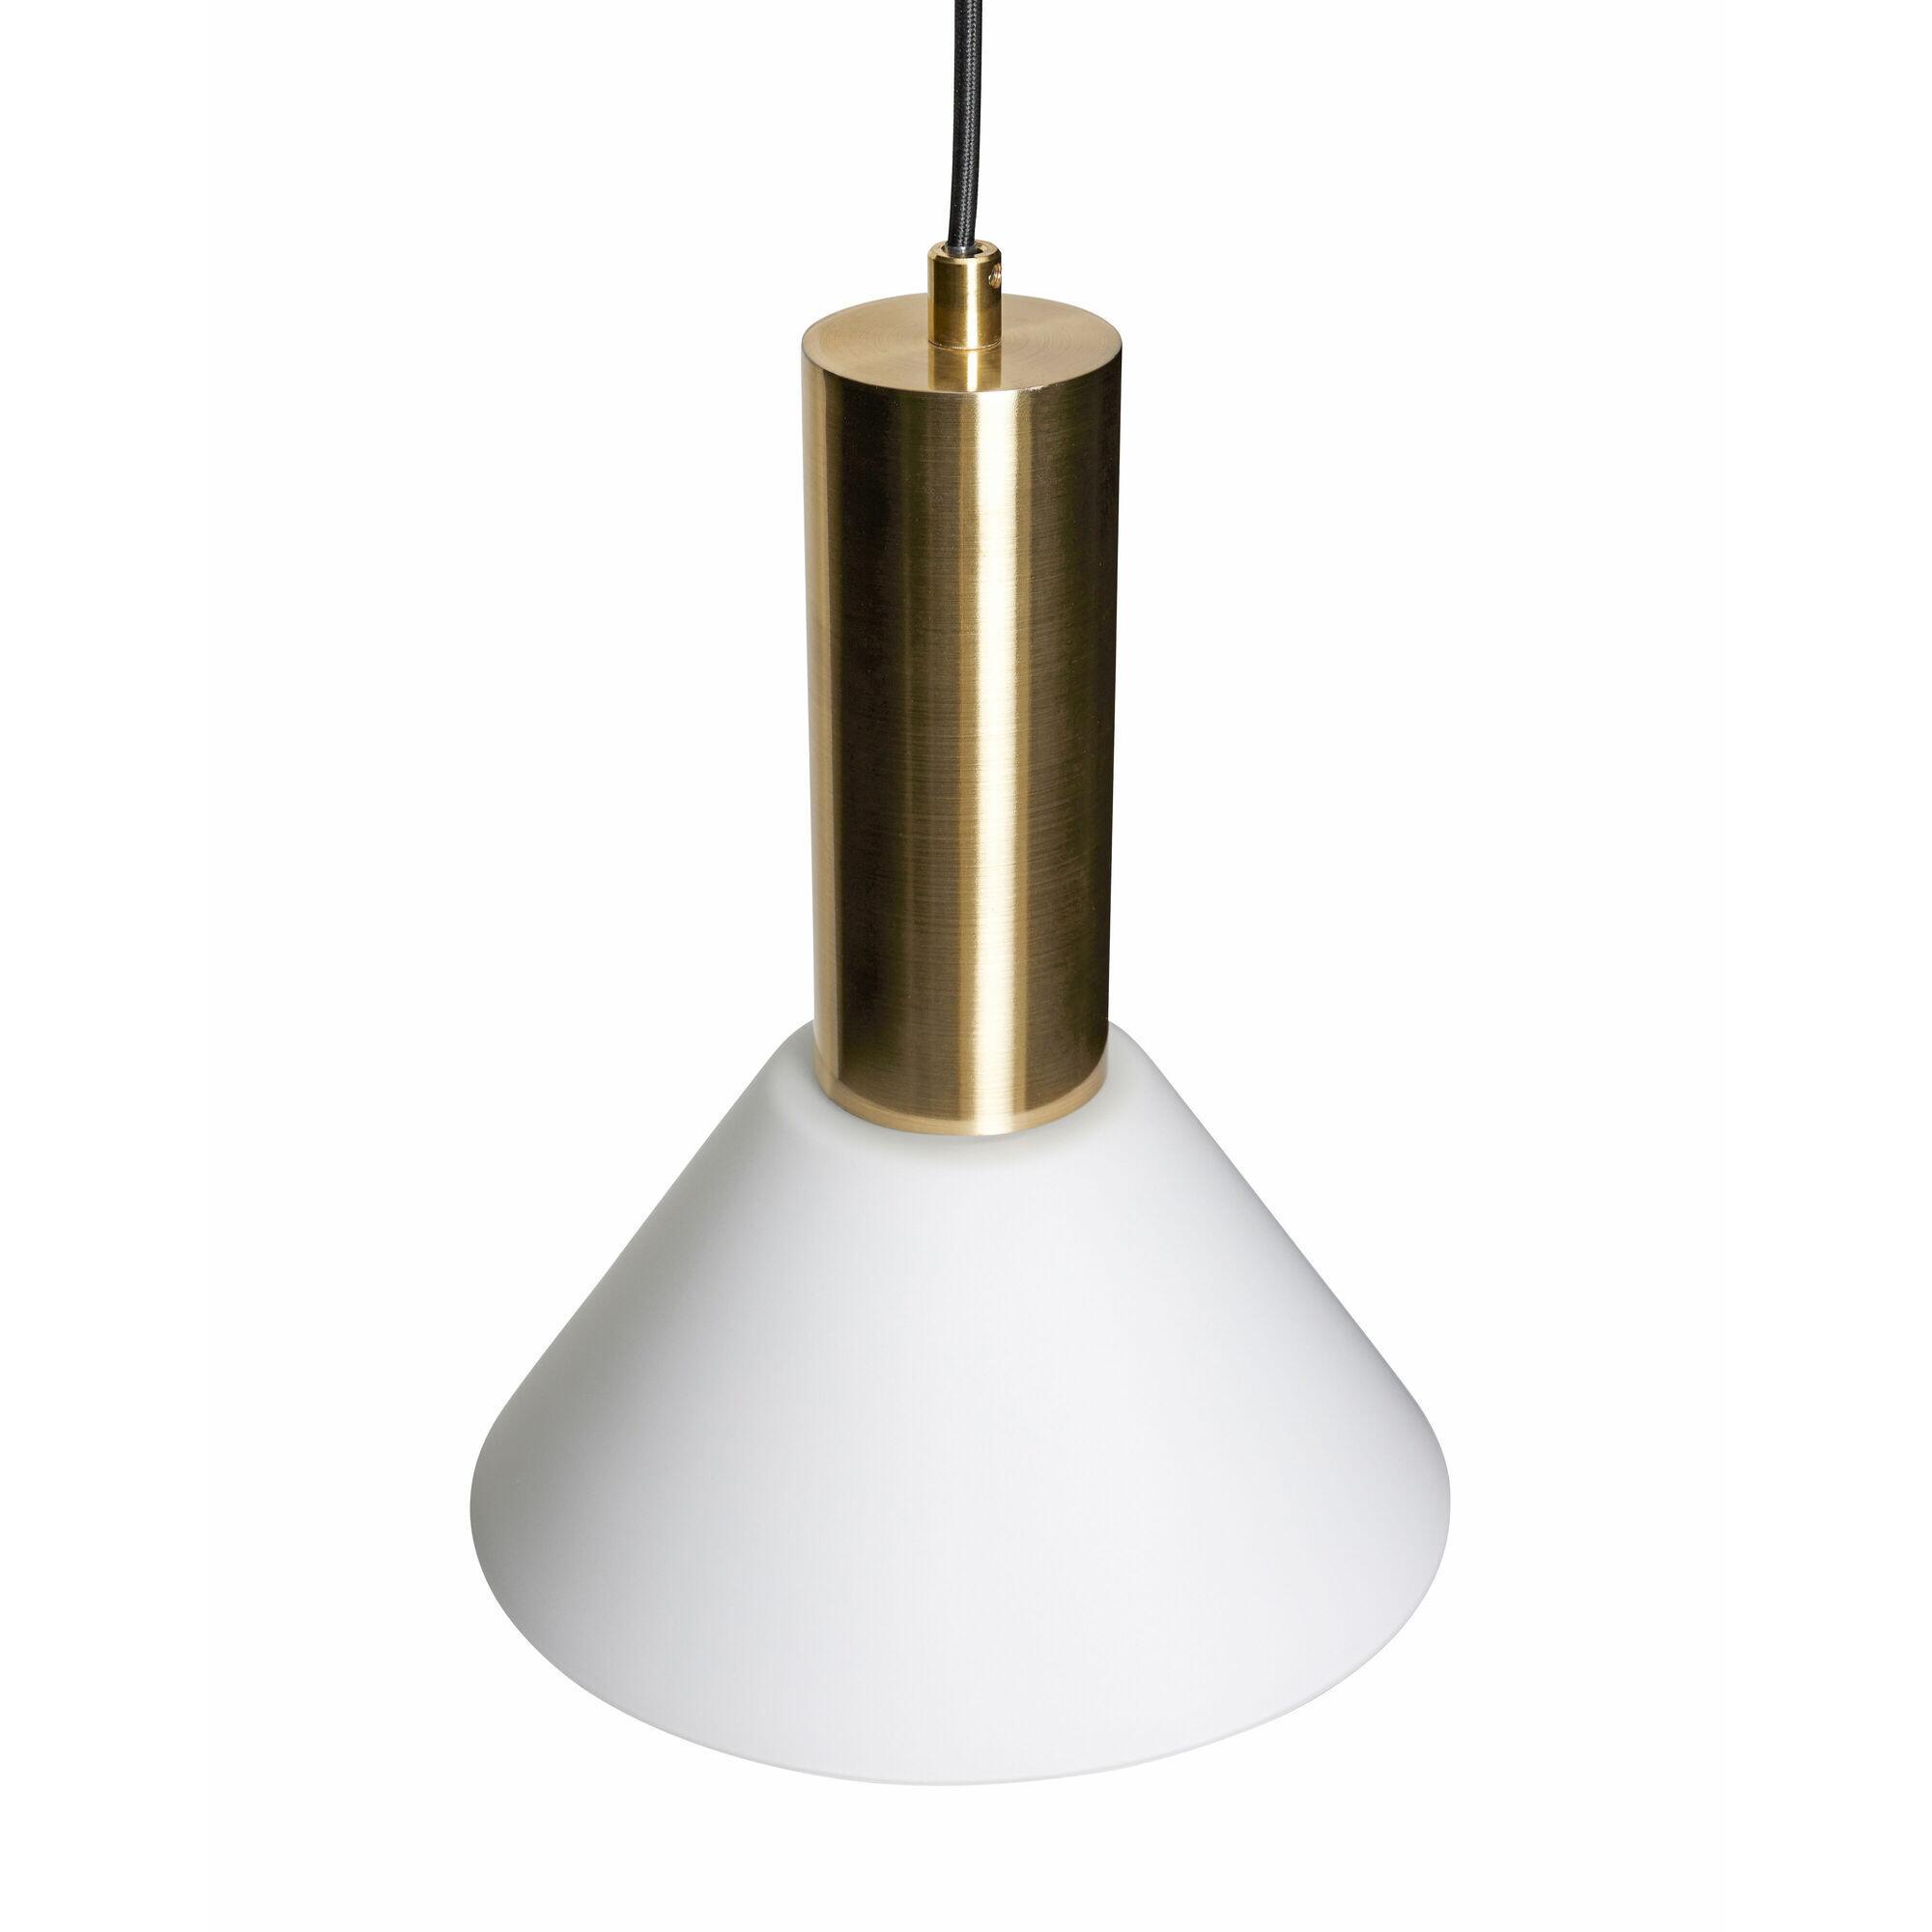  Contrast Loftslampe - Messingfarve, Hvid fra Hübsch Interiør i Glas, Jern (Varenr: 961612)